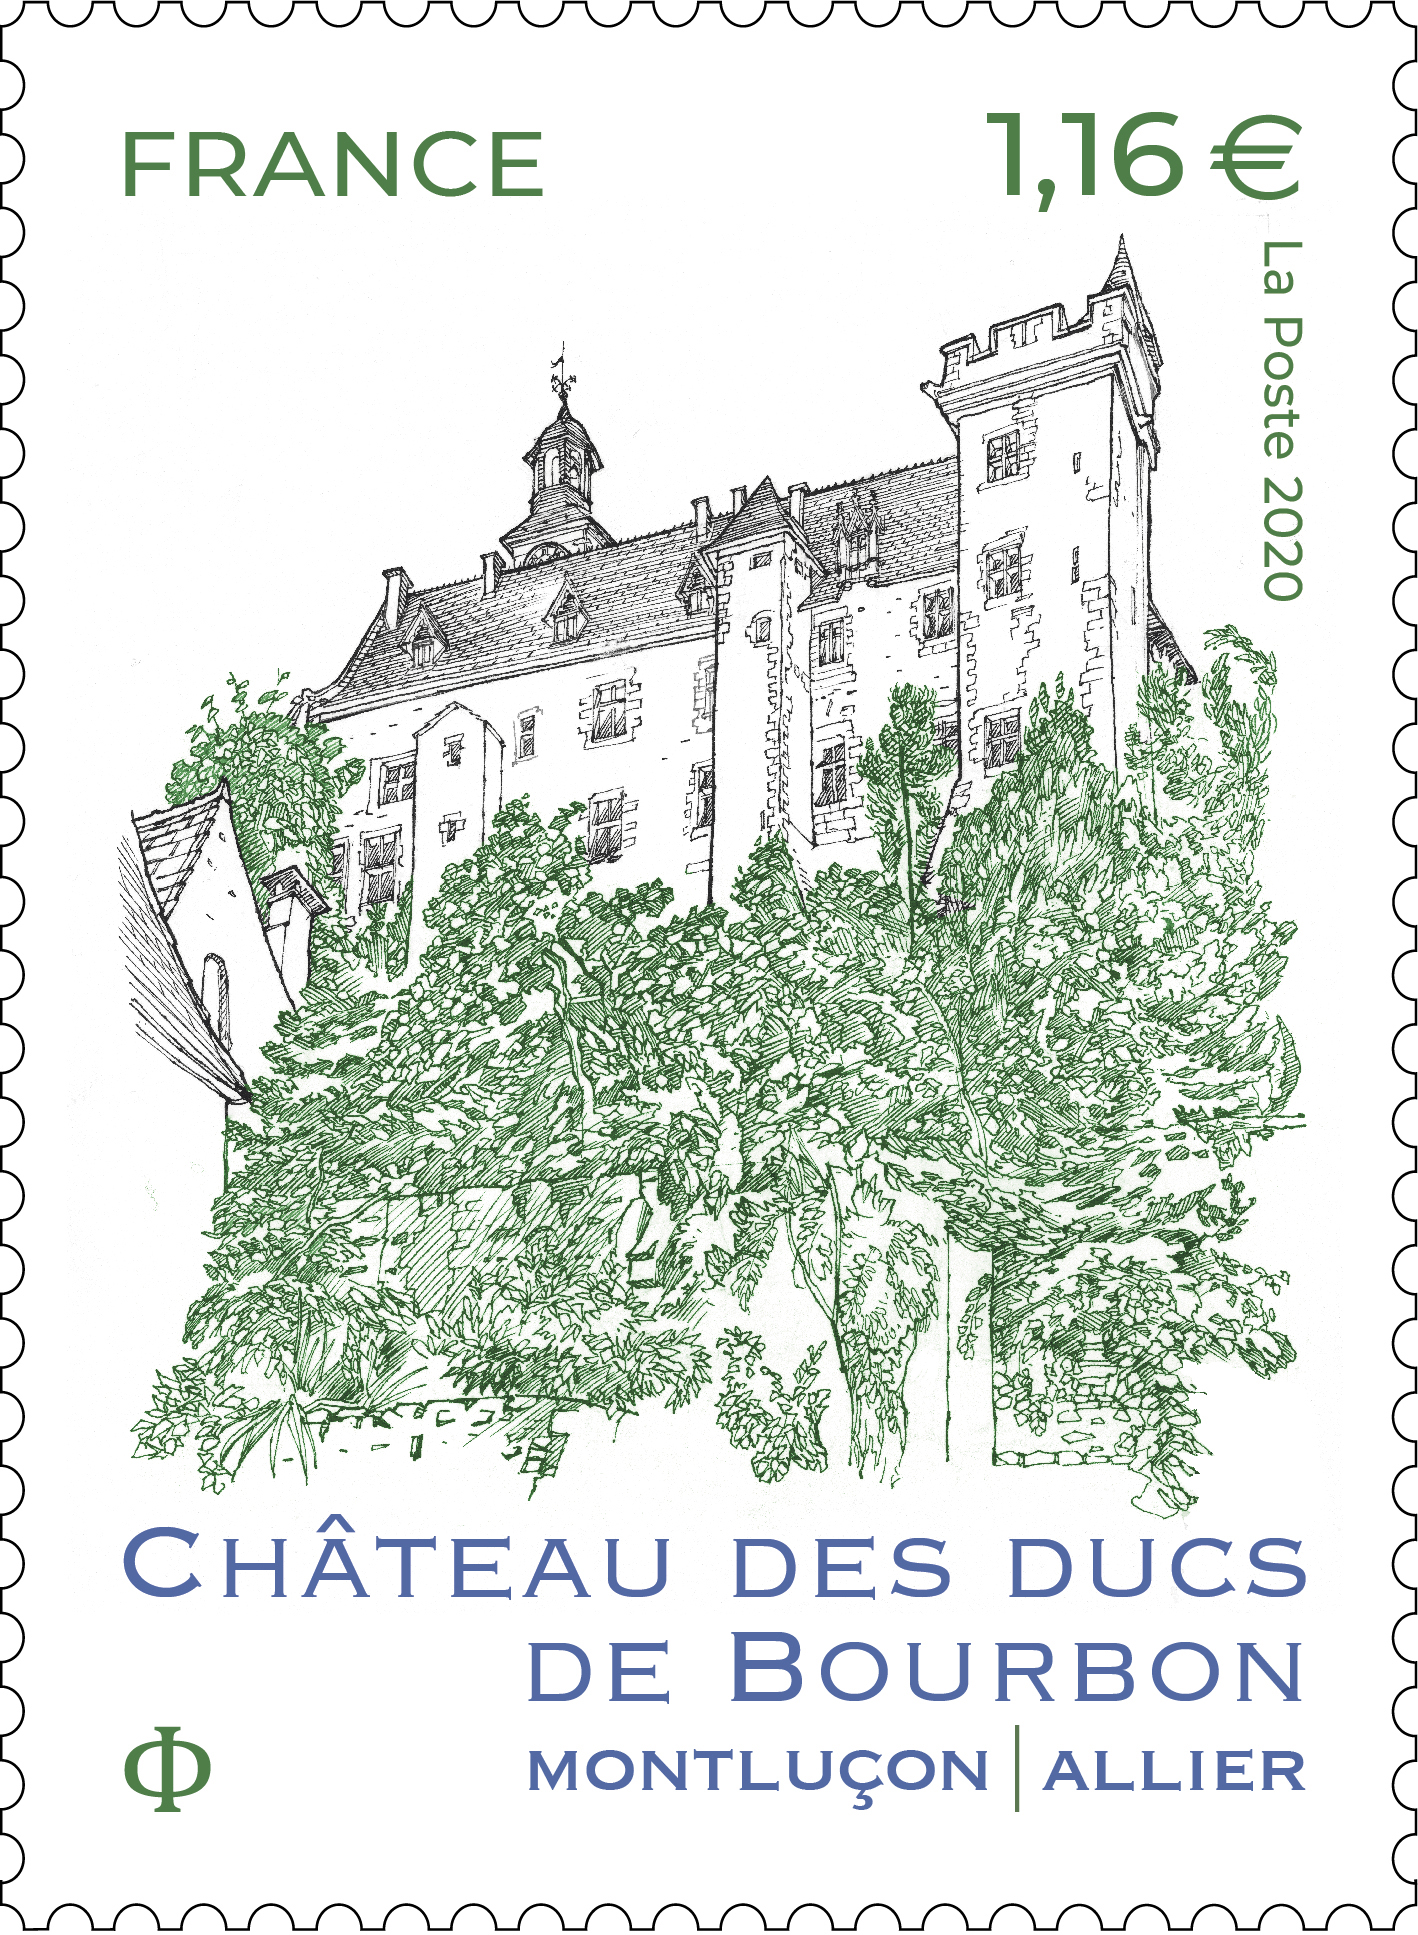 Château des Ducs de Bourbon - Montluçon Allier